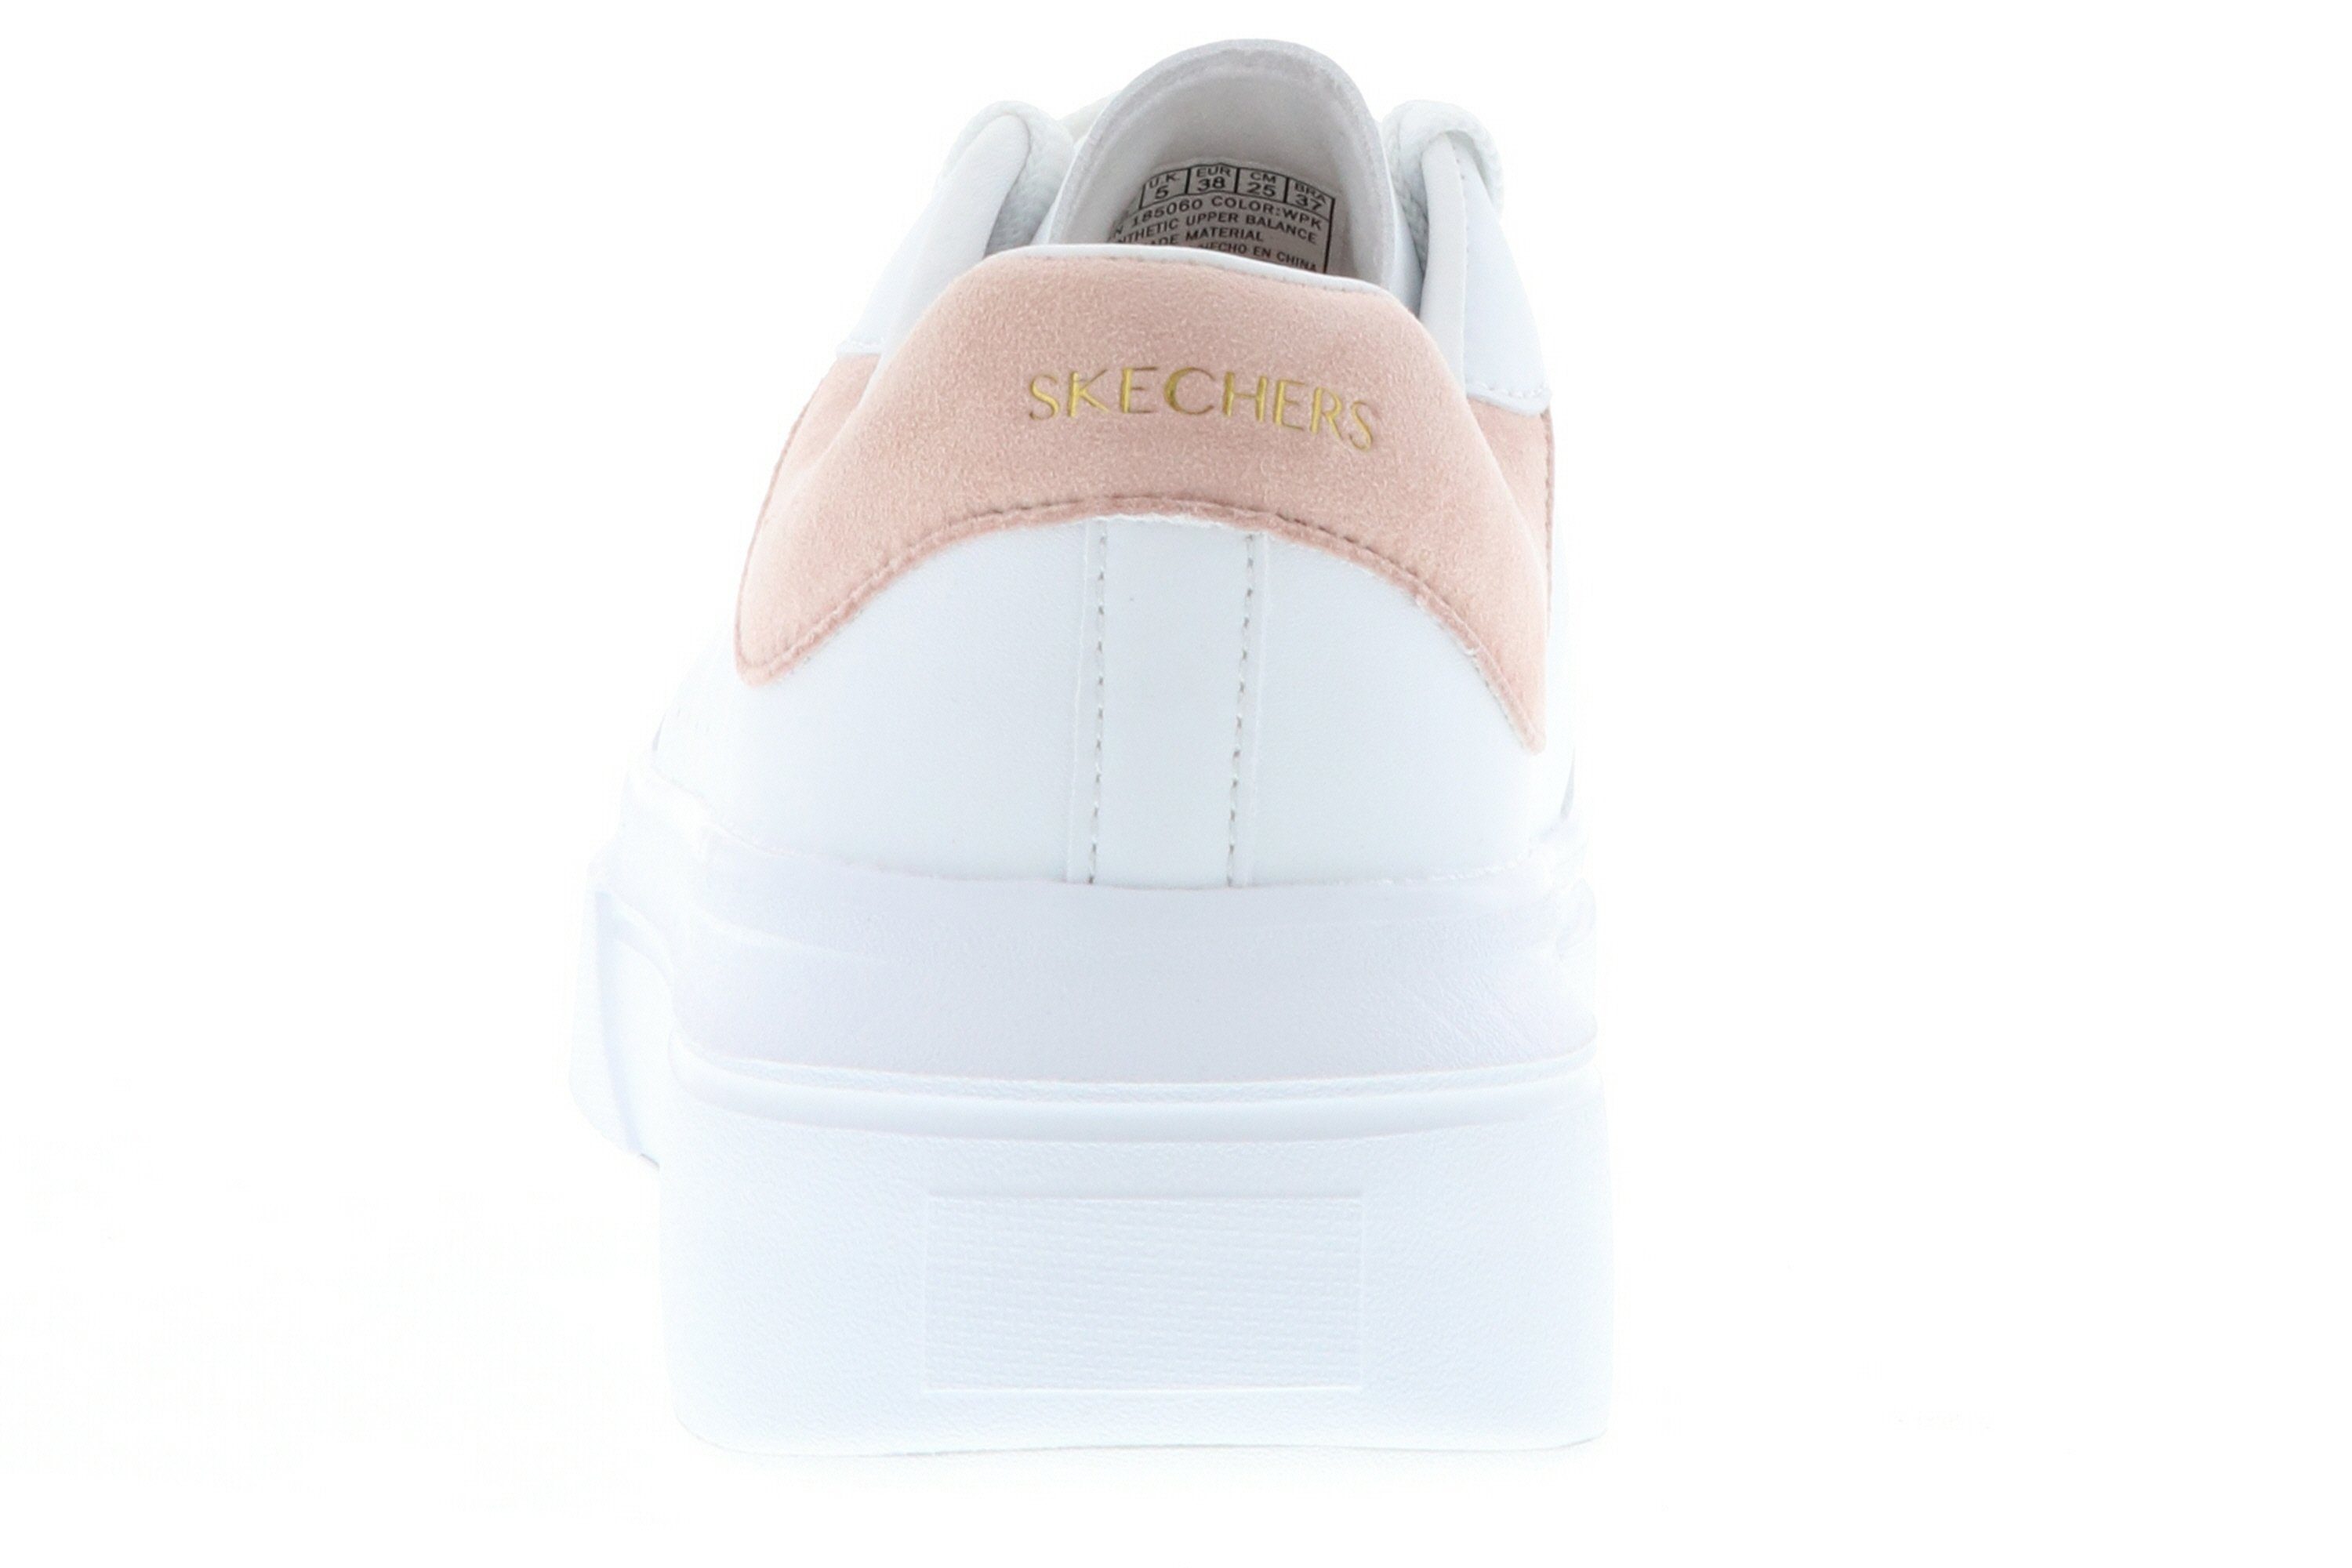 Sneaker White/Pink Cordova Gummi rutschhemmende (20203205) aus Classic-Best Skechers Sohle Behavior 185060/WPK white/pink